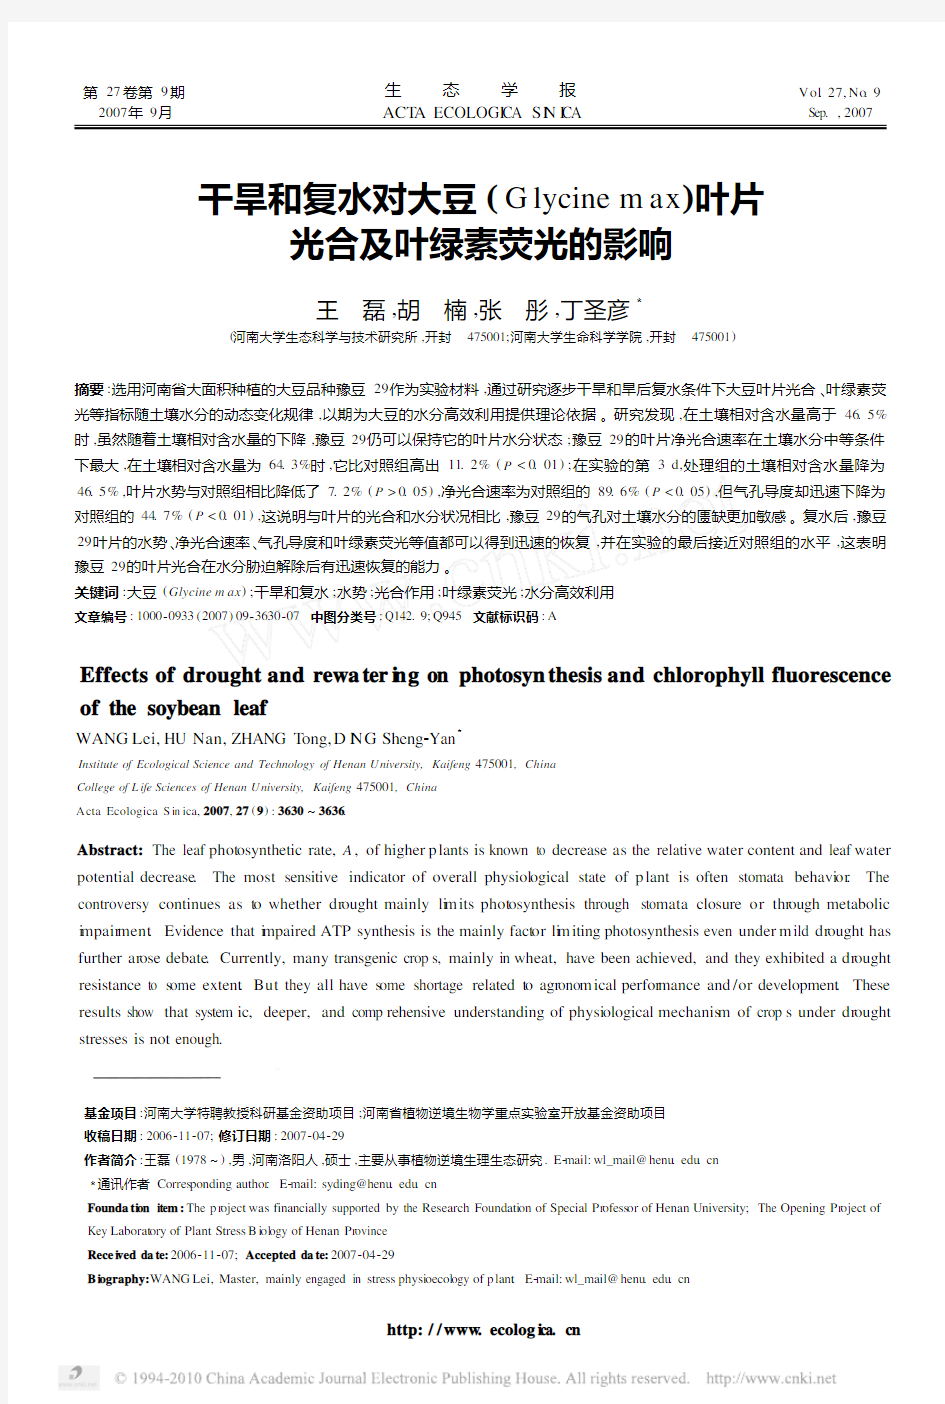 干旱和复水对大豆_Glycinemax_叶片光合及叶绿素荧光的影响